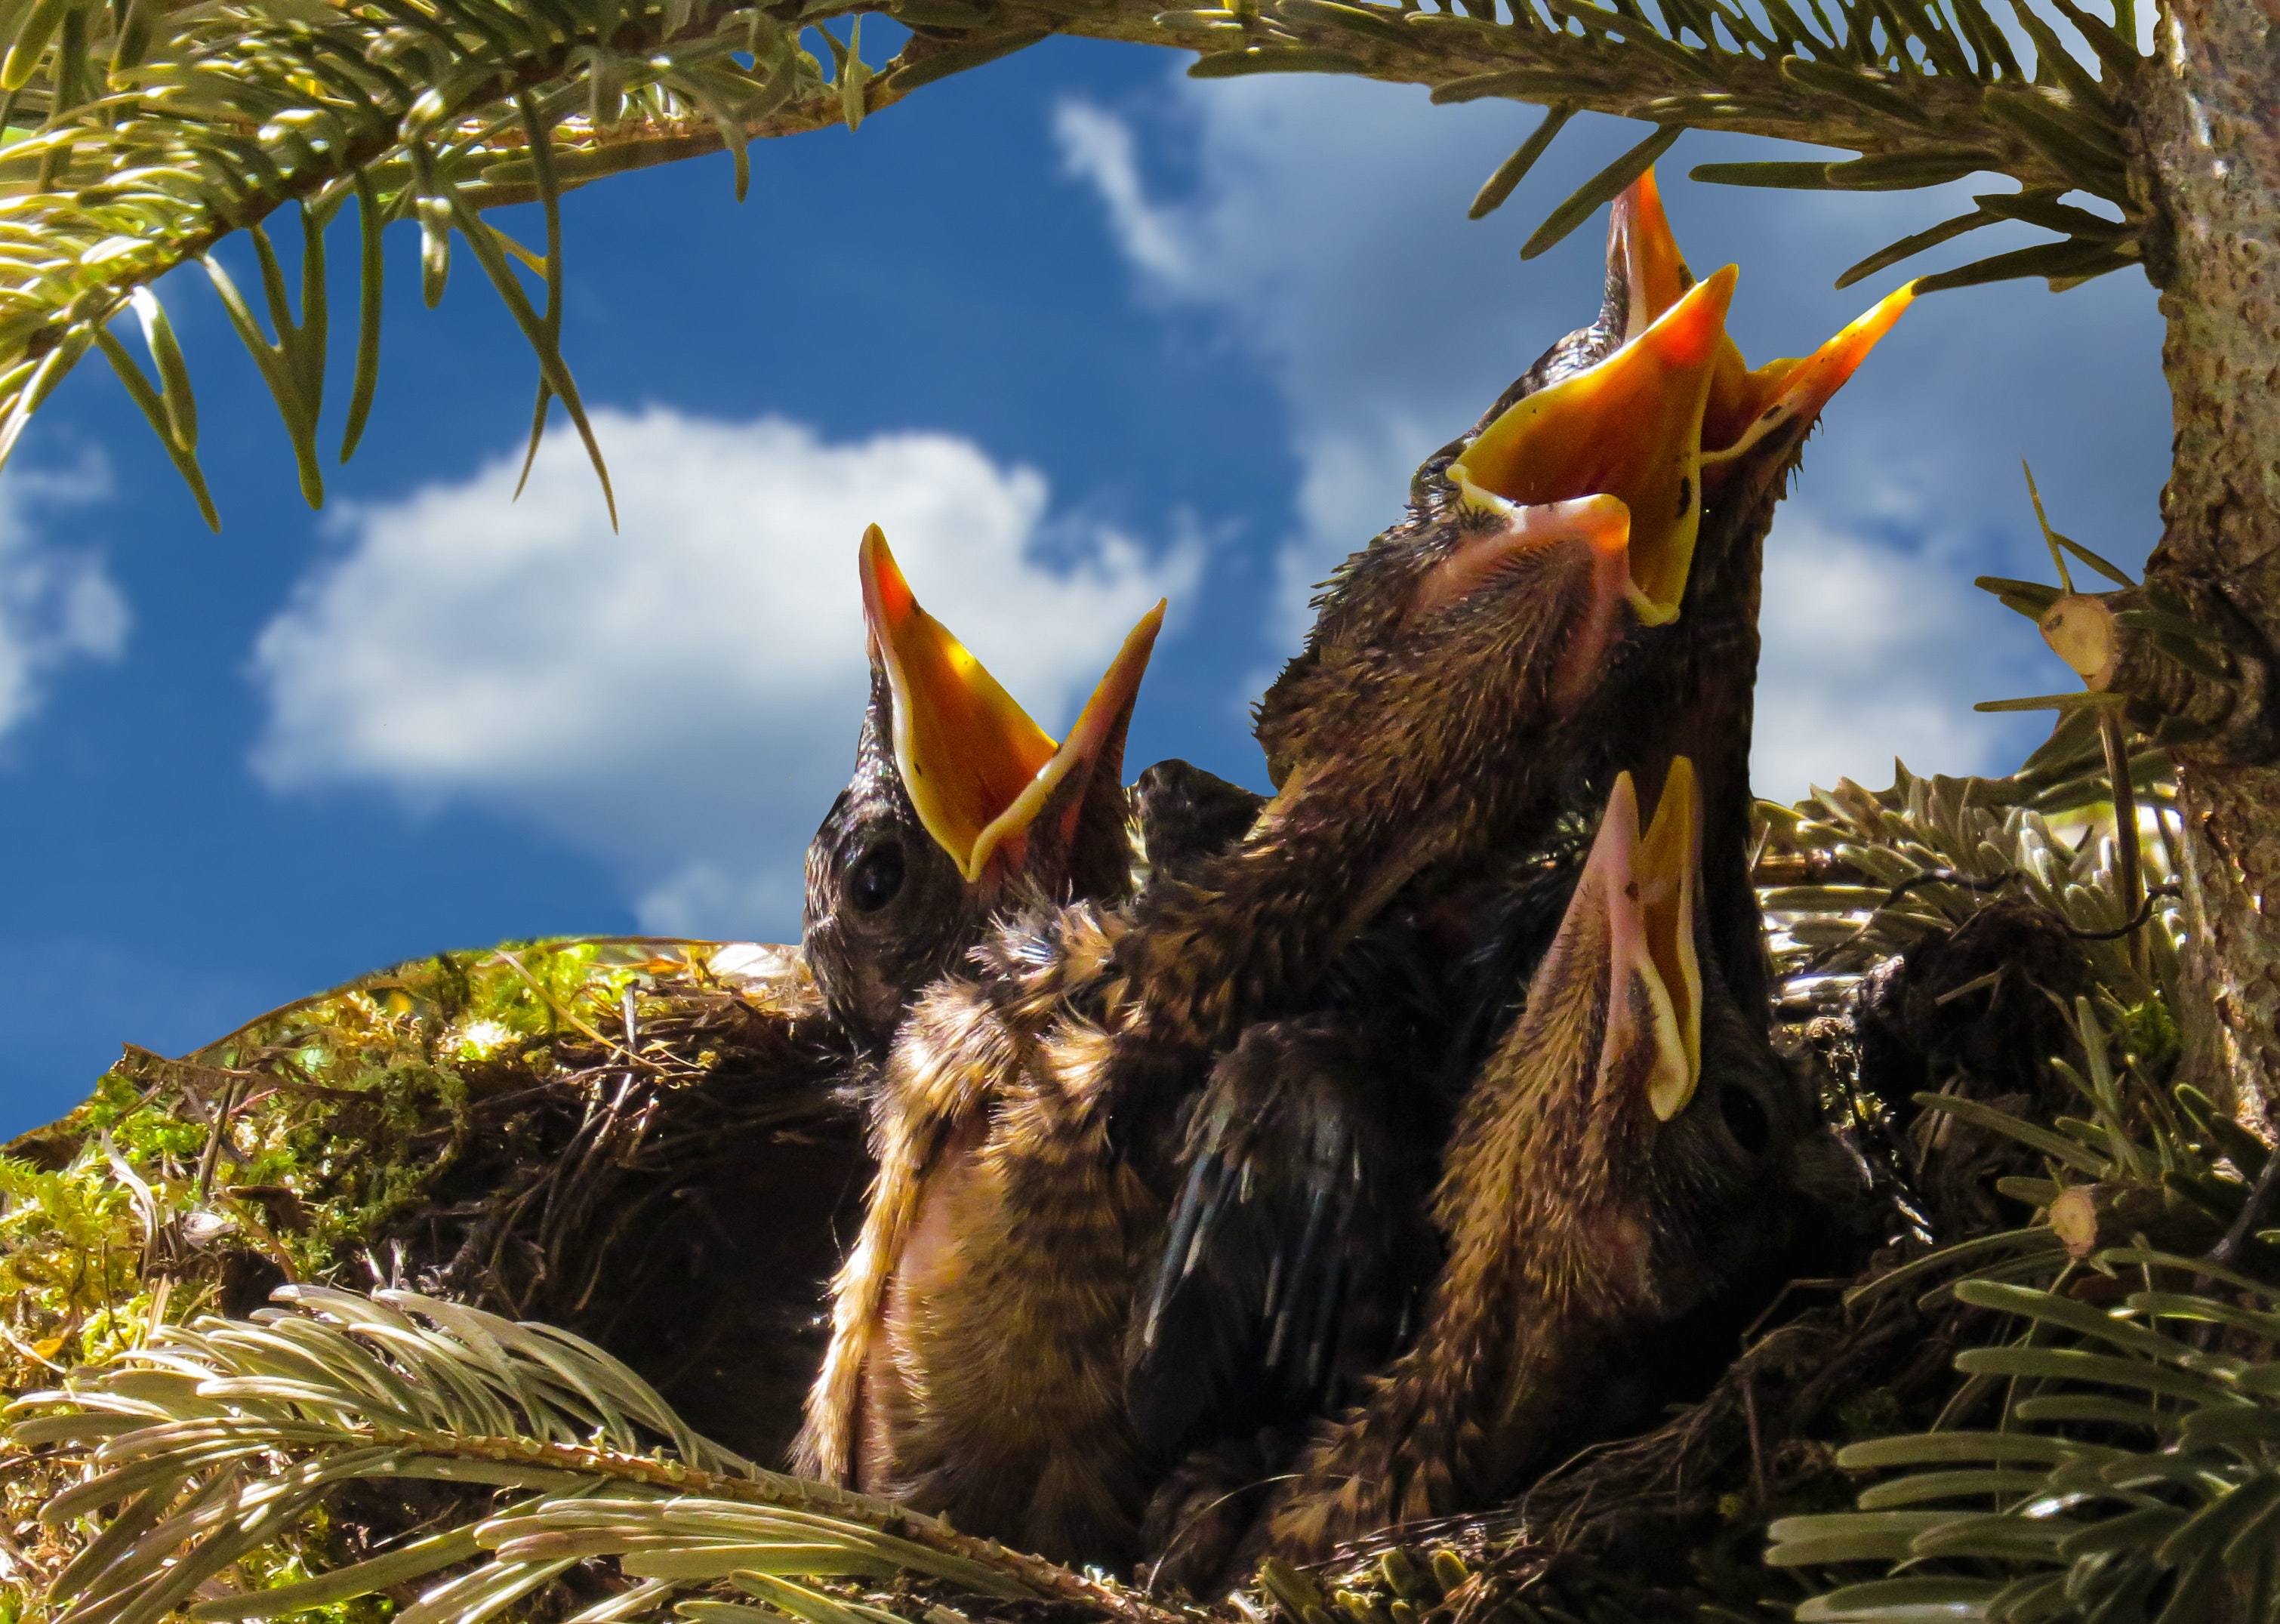 1000+ Great Bird Nest Photos · Pexels · Free Stock Photos